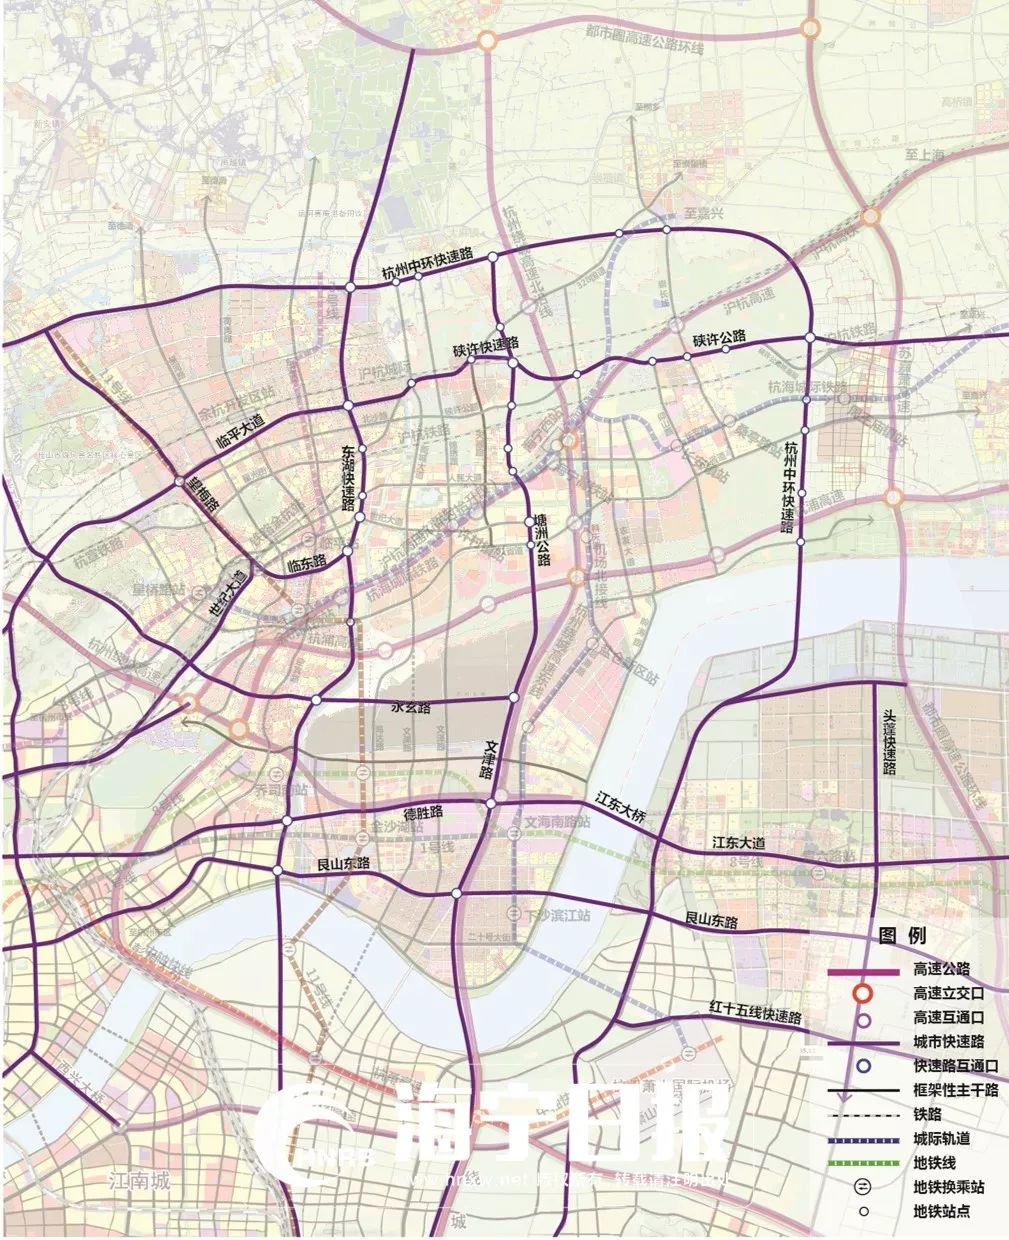 快速路主要规划设想:一环 一纵一横:(1)一环:杭州中环快速路(2)南北向